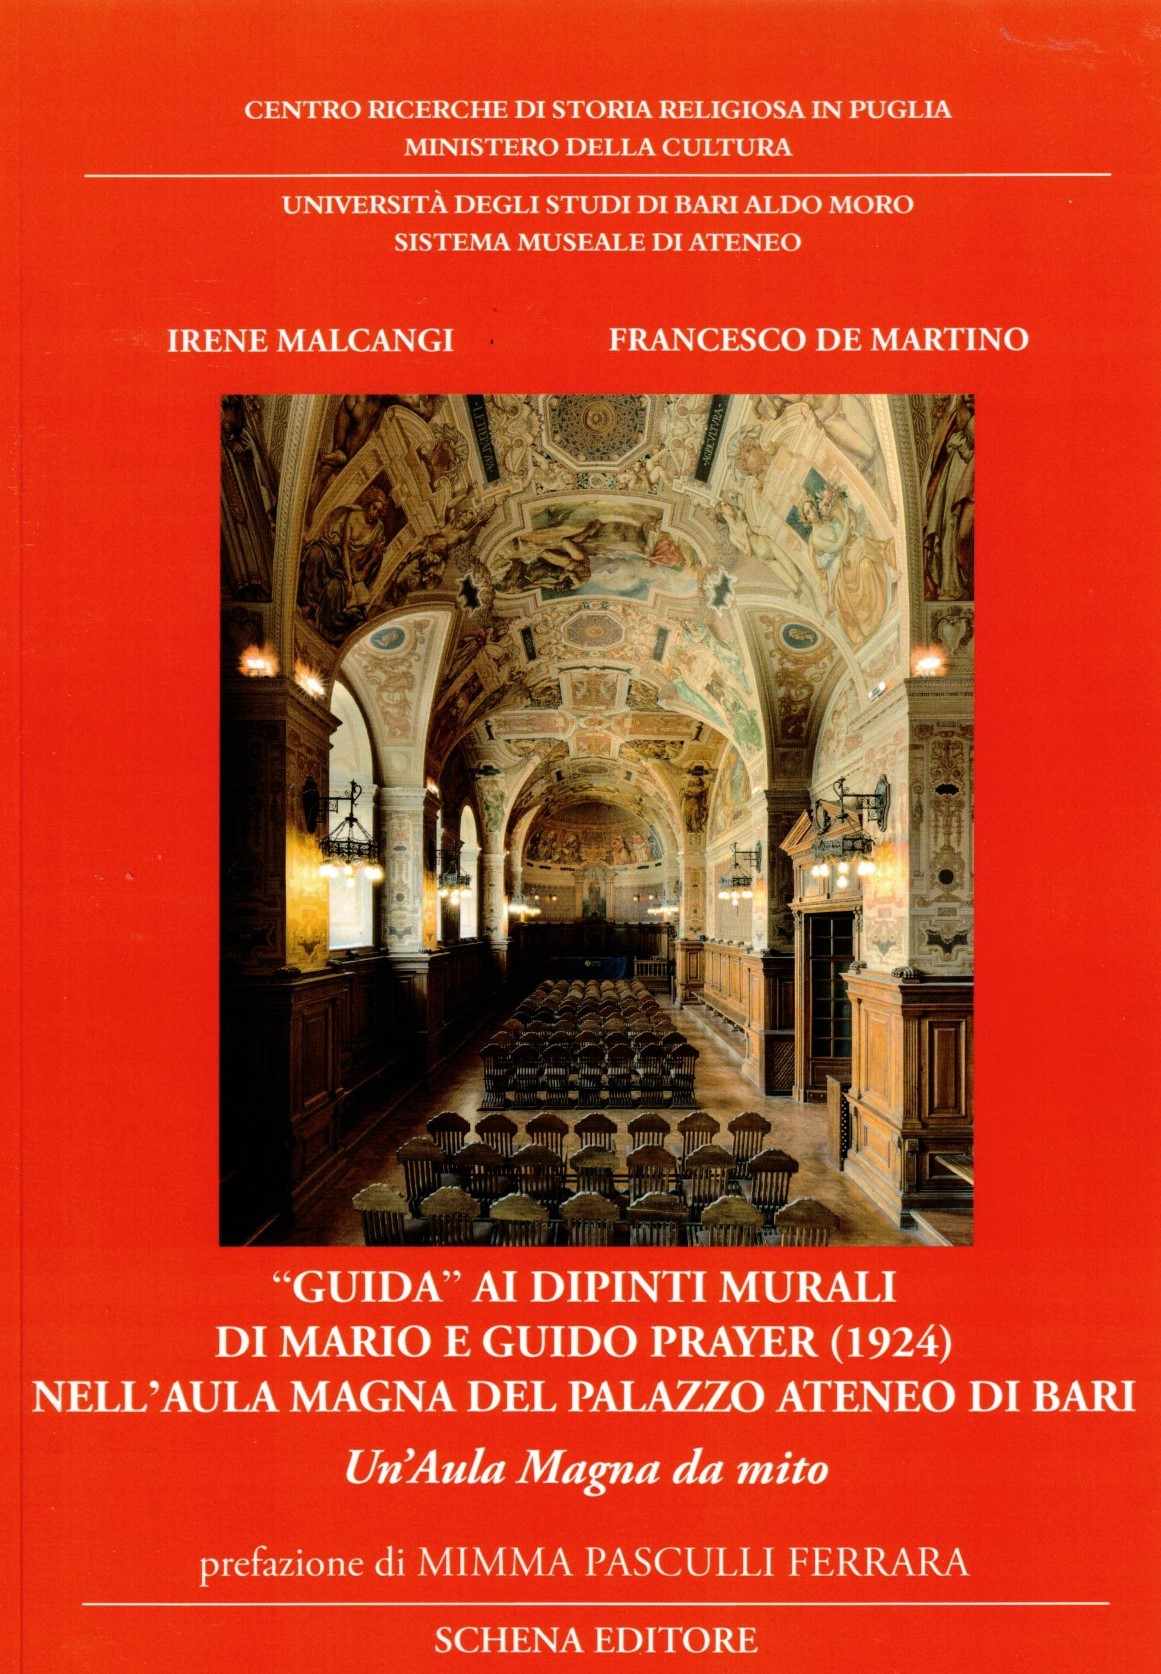 copertina-del-libro-guida-ai-dipinti-murali-di-mario-e-guido-prayer-1924-nellaula-magna-del-palazzo-ateneo-di-bari.jpg